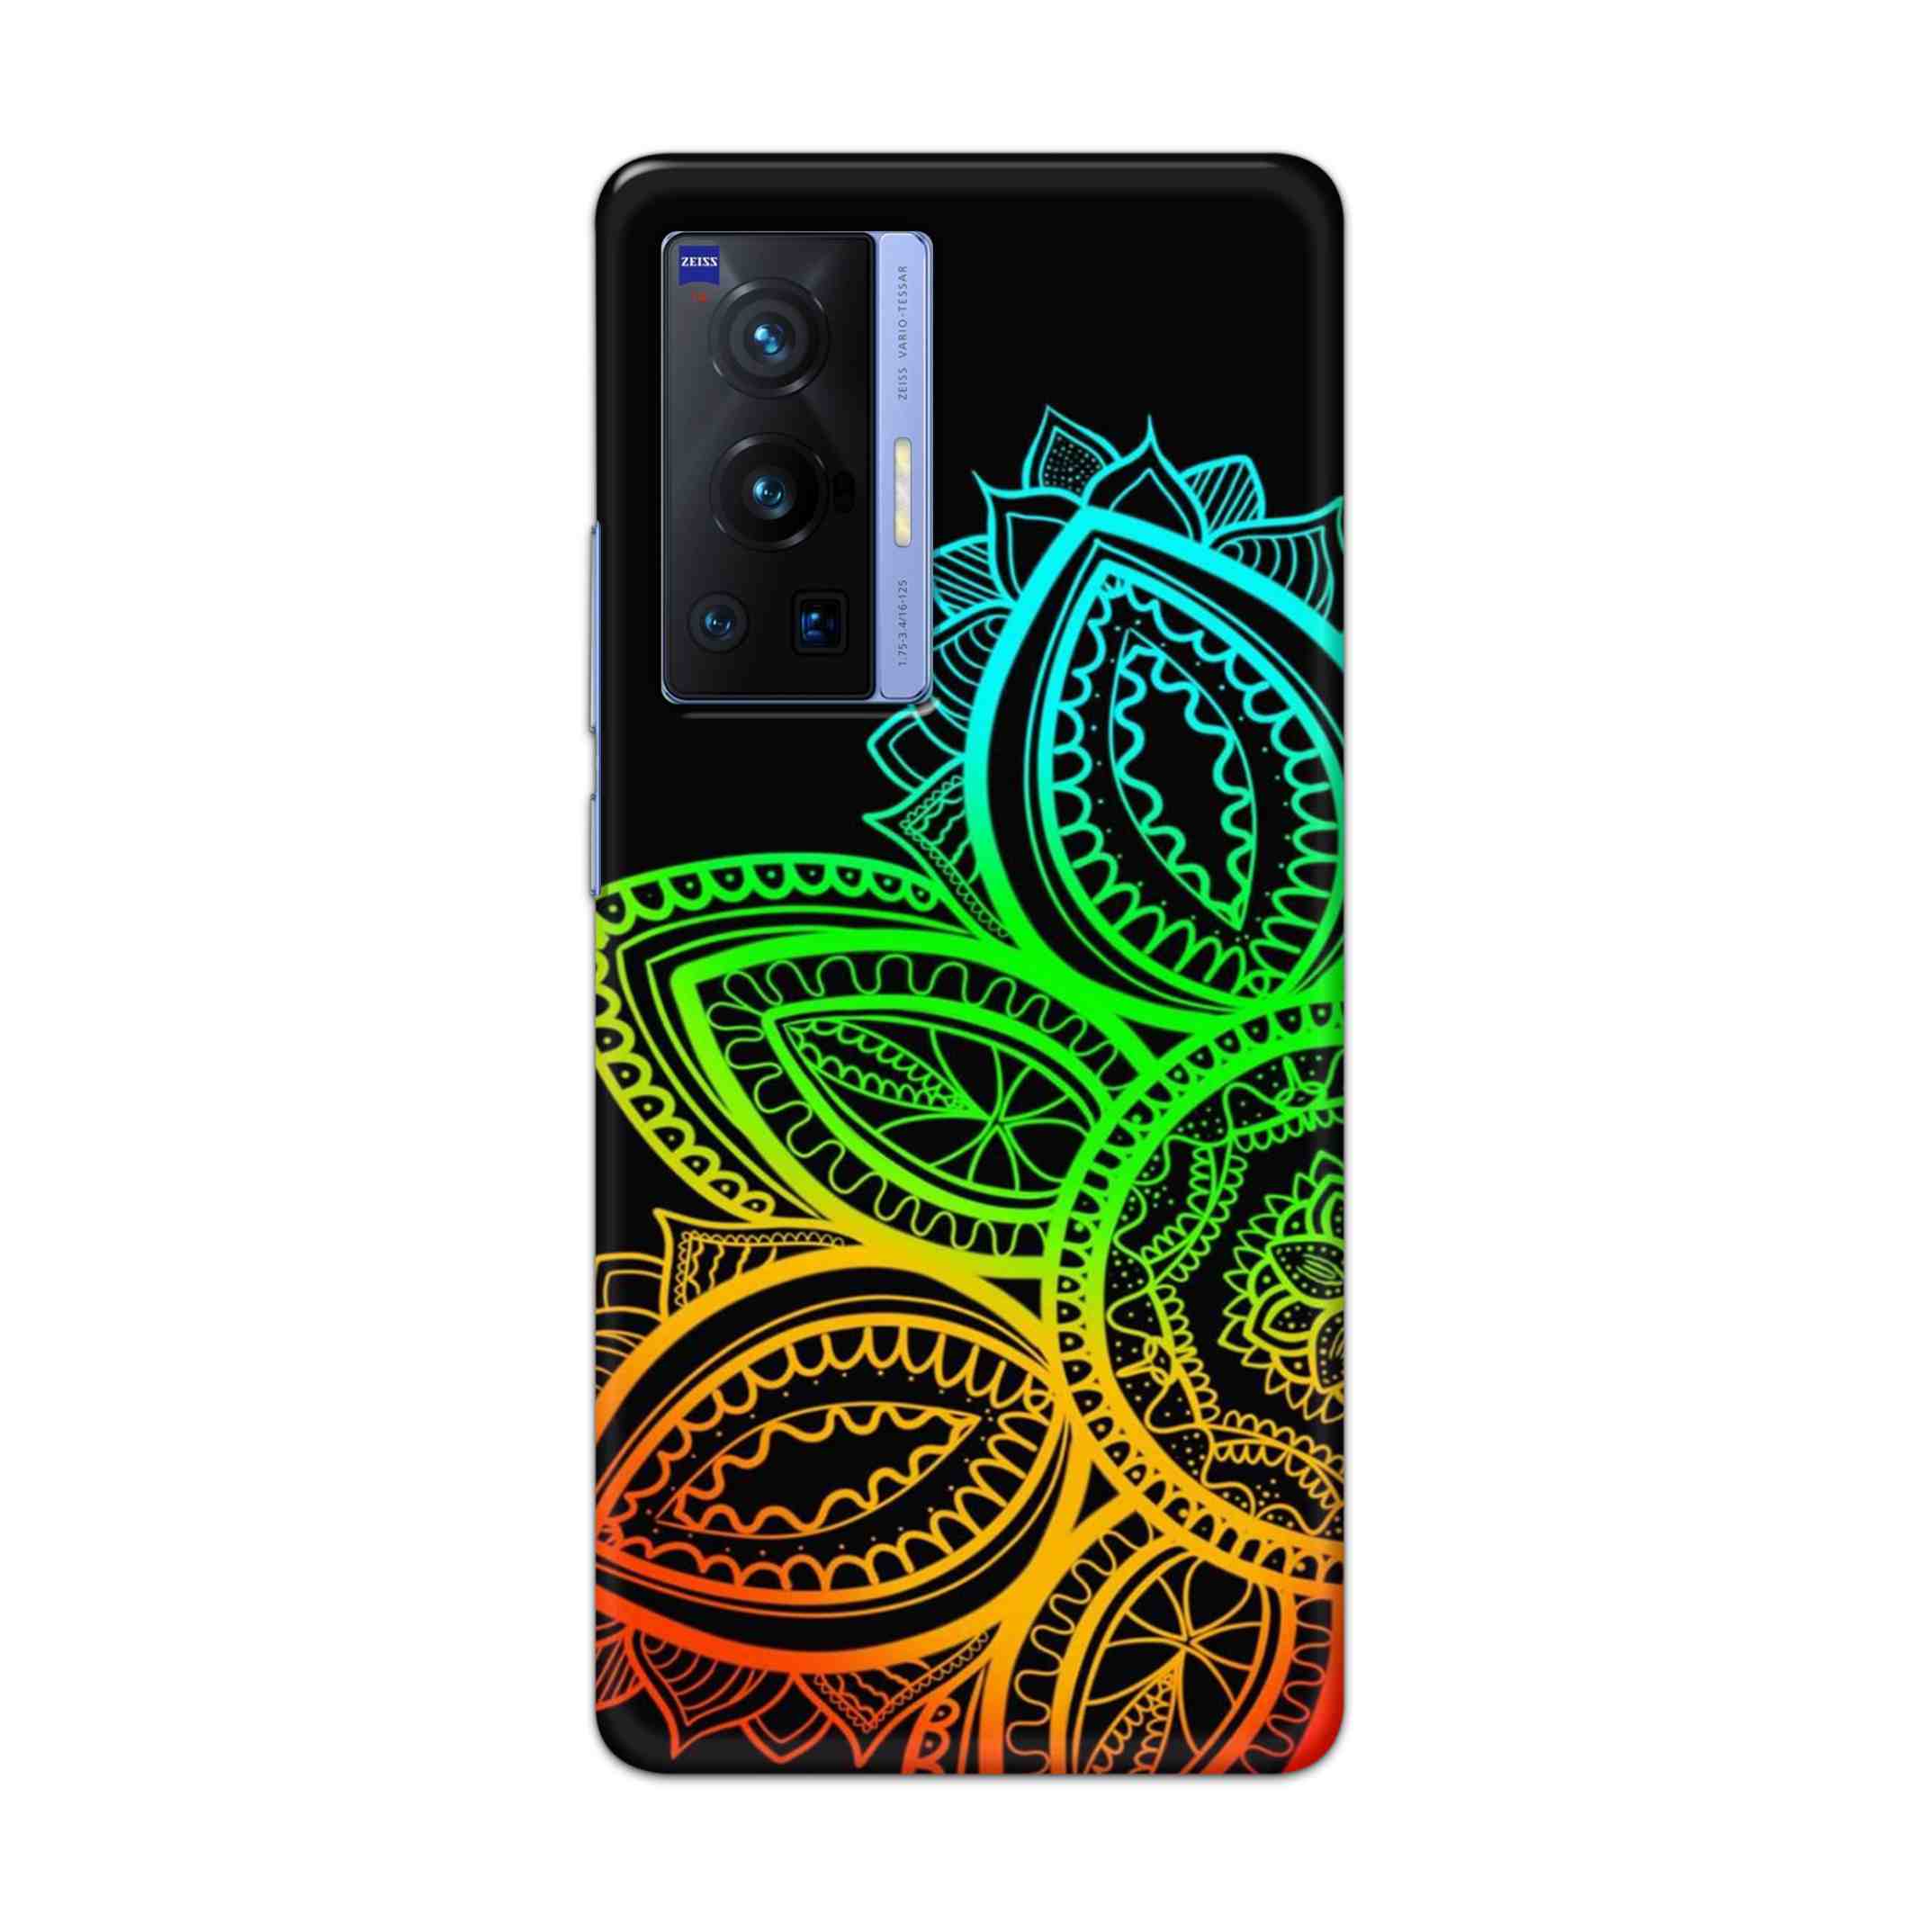 Buy Neon Mandala Hard Back Mobile Phone Case Cover For Vivo X70 Pro Online